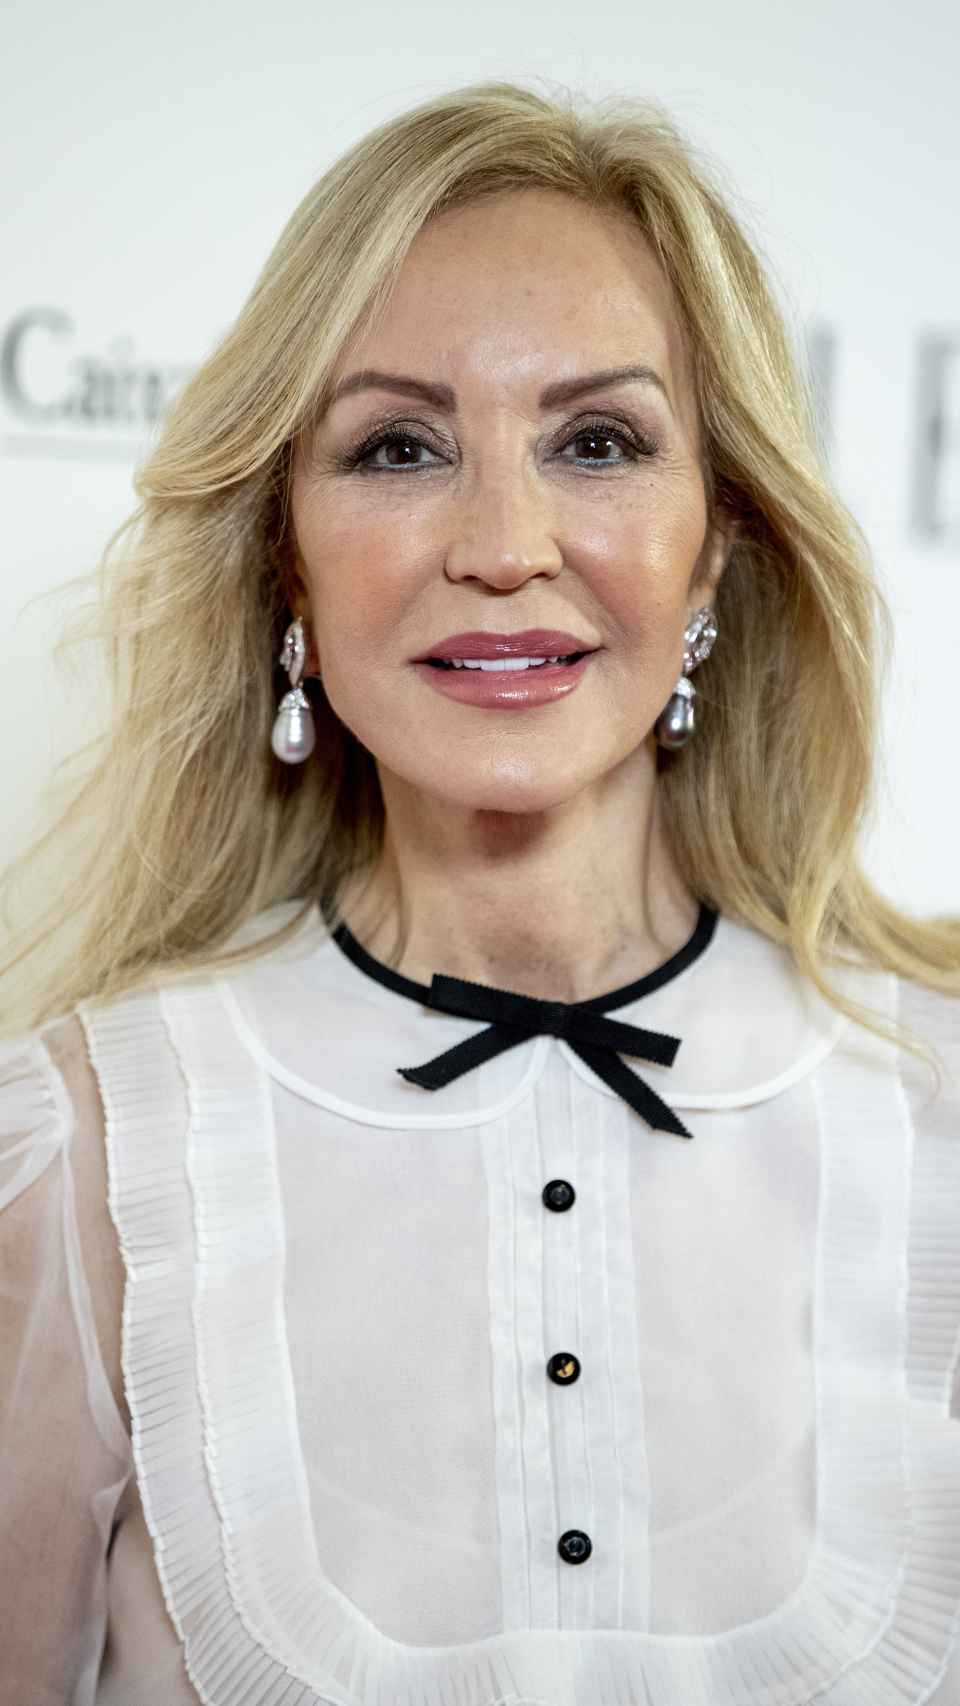 La empresaria Carmen Lomana durante el aniversario de Elle Magazine en diciembre de 2020.